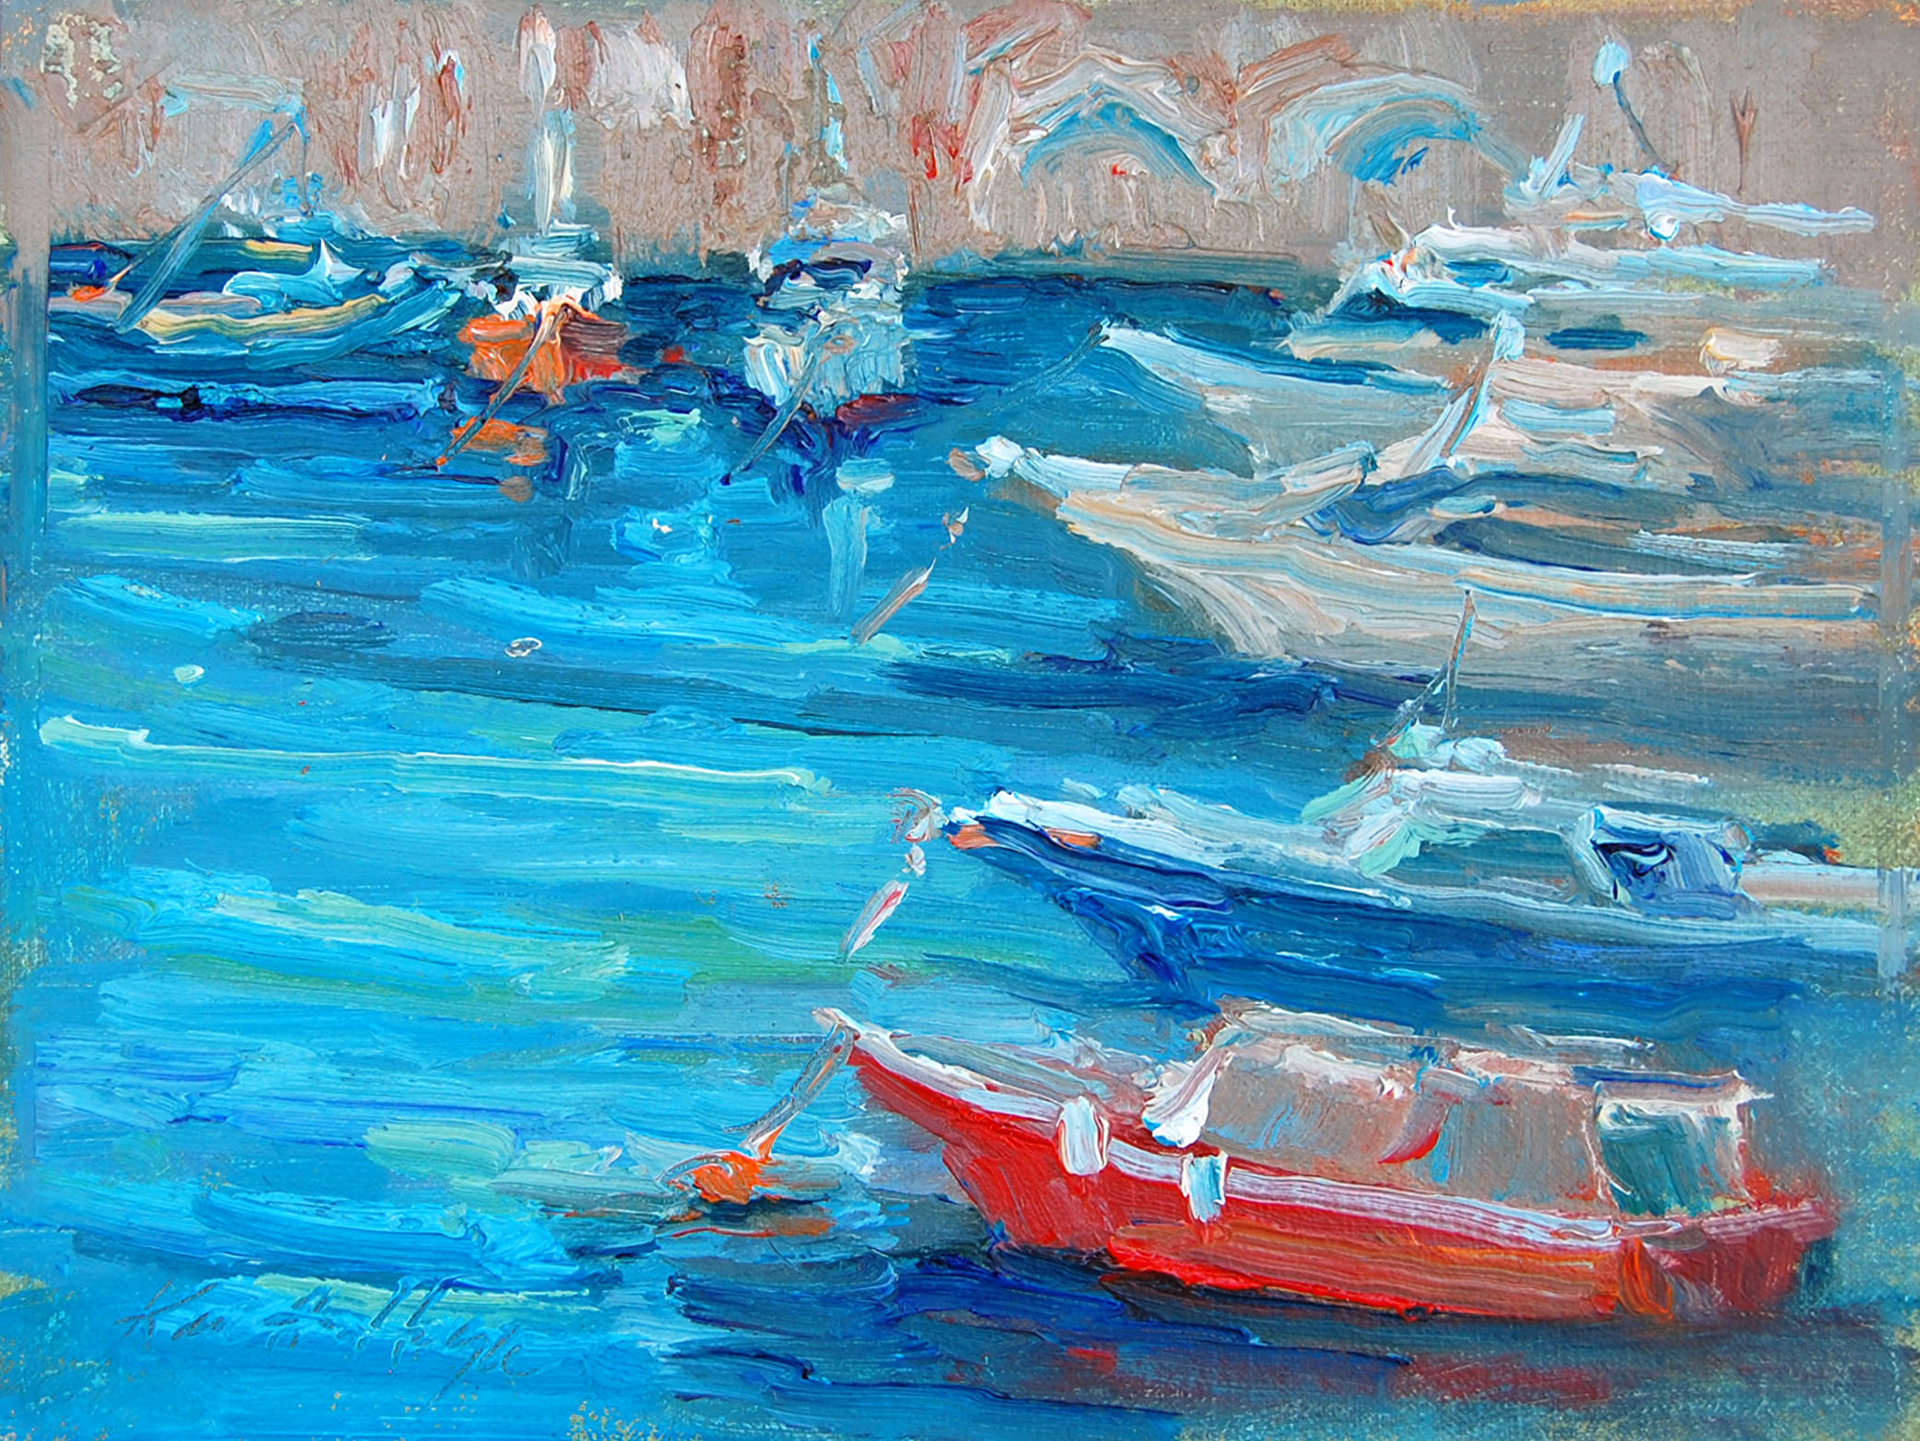 Red Boat in Amalfi by Karen Hewitt Hagan